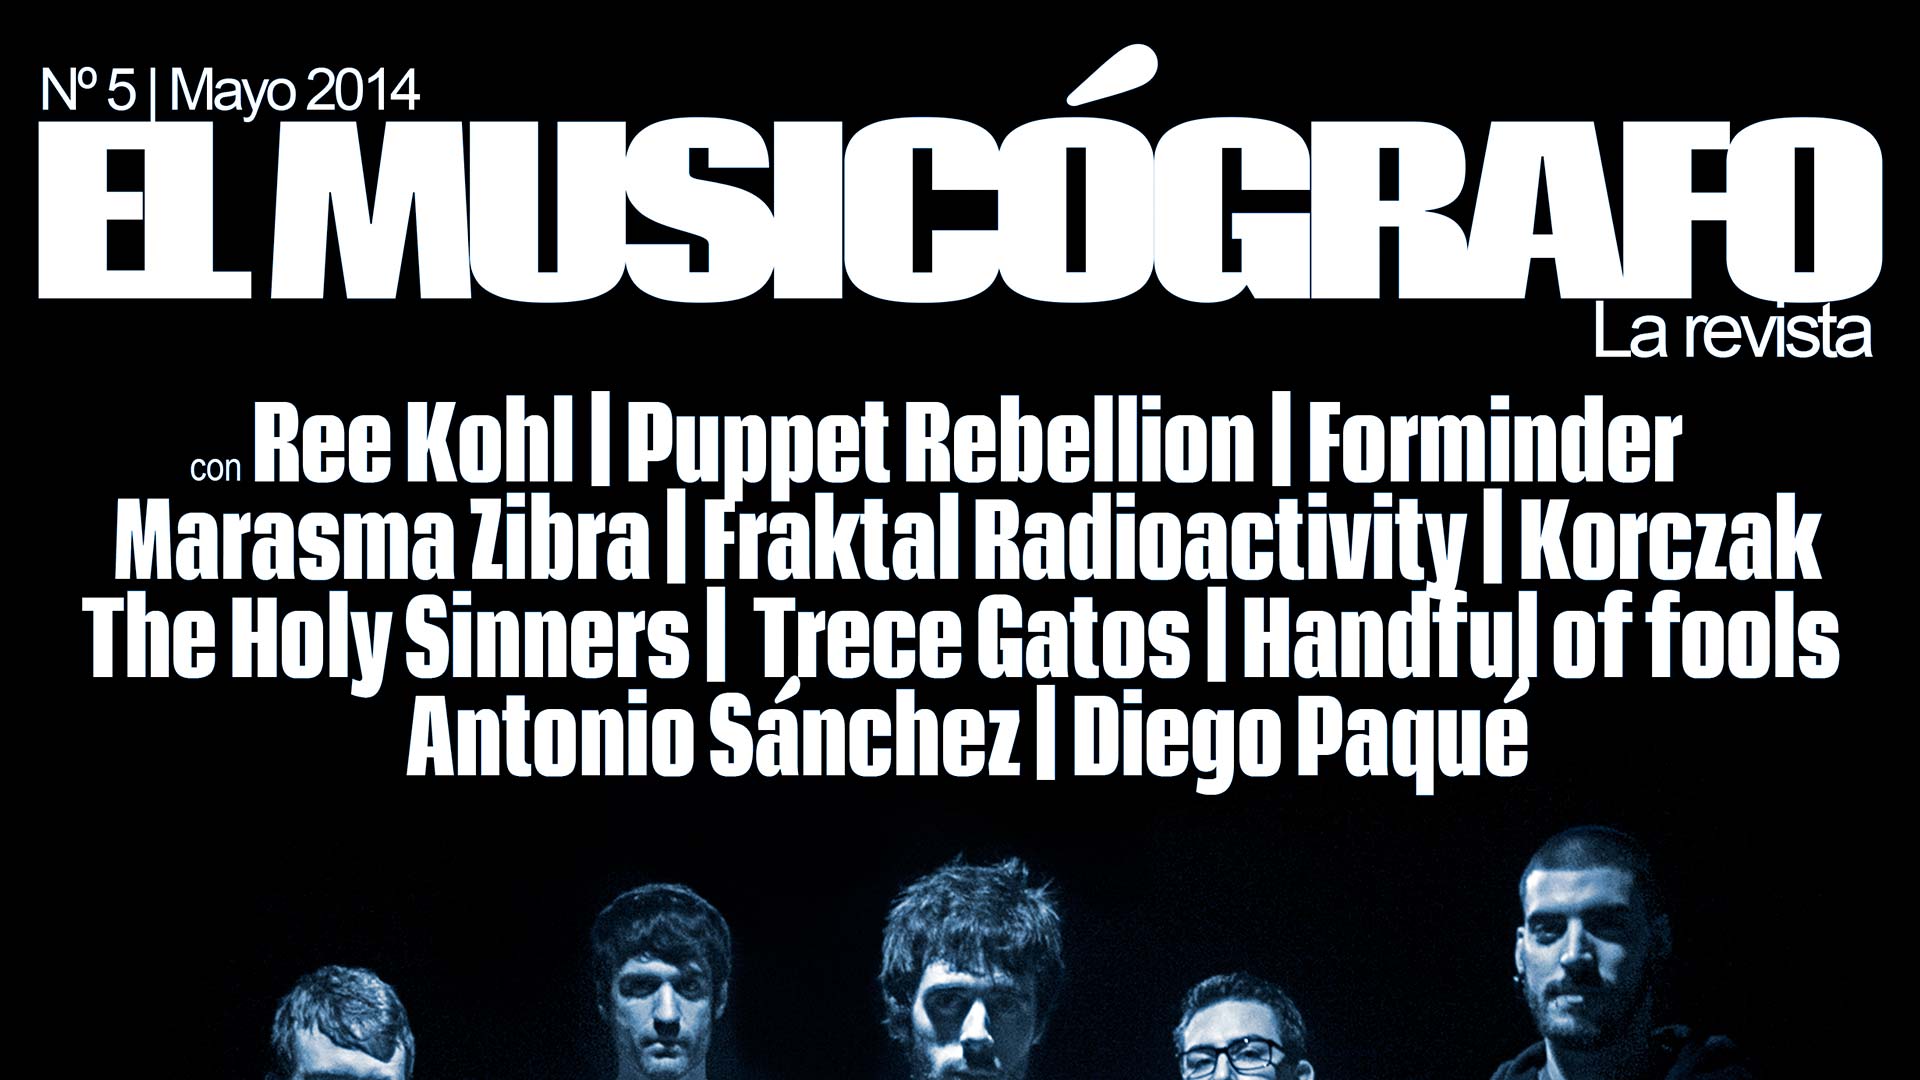 Nº5 | El Musicógrafo - La revista | Mayo 2014. Este mes con las bandas Siberia, Ree Kohl, Puppet Rebellion, Forminder, Marasma Zibra, Korczak y más.